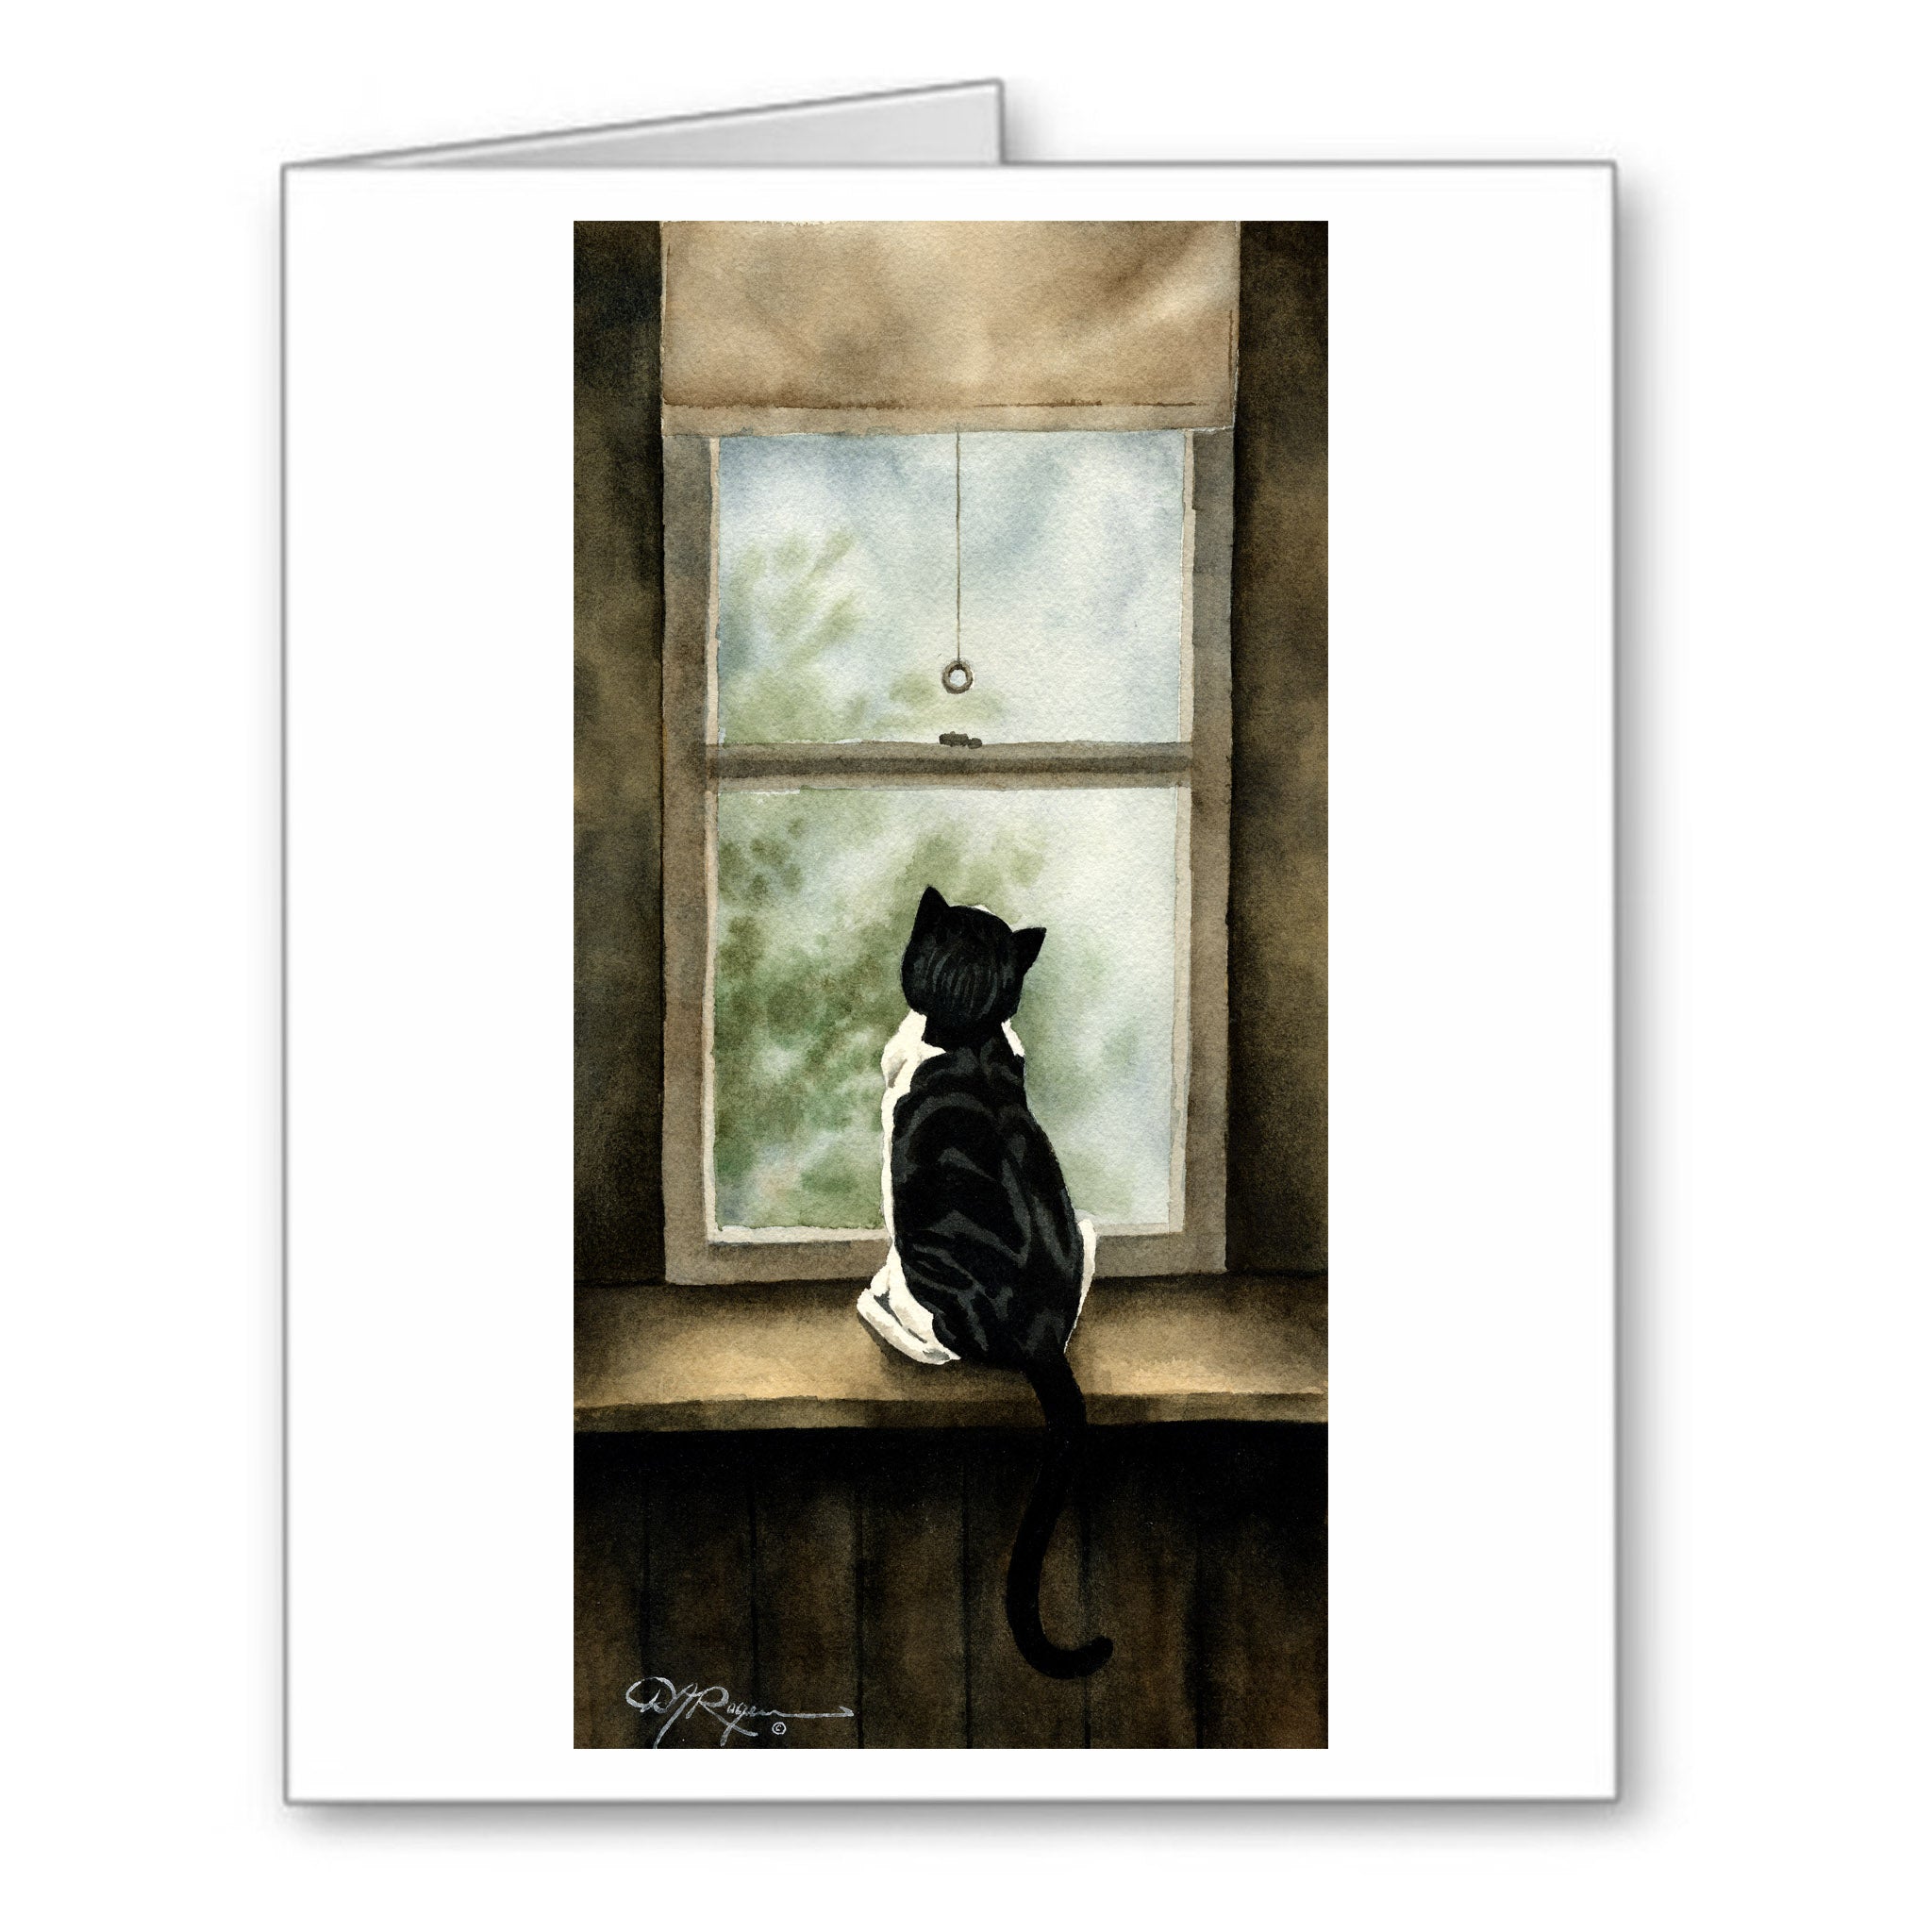 Tuxedo Cat Watercolor Note Card Art by Artist DJ Rogers